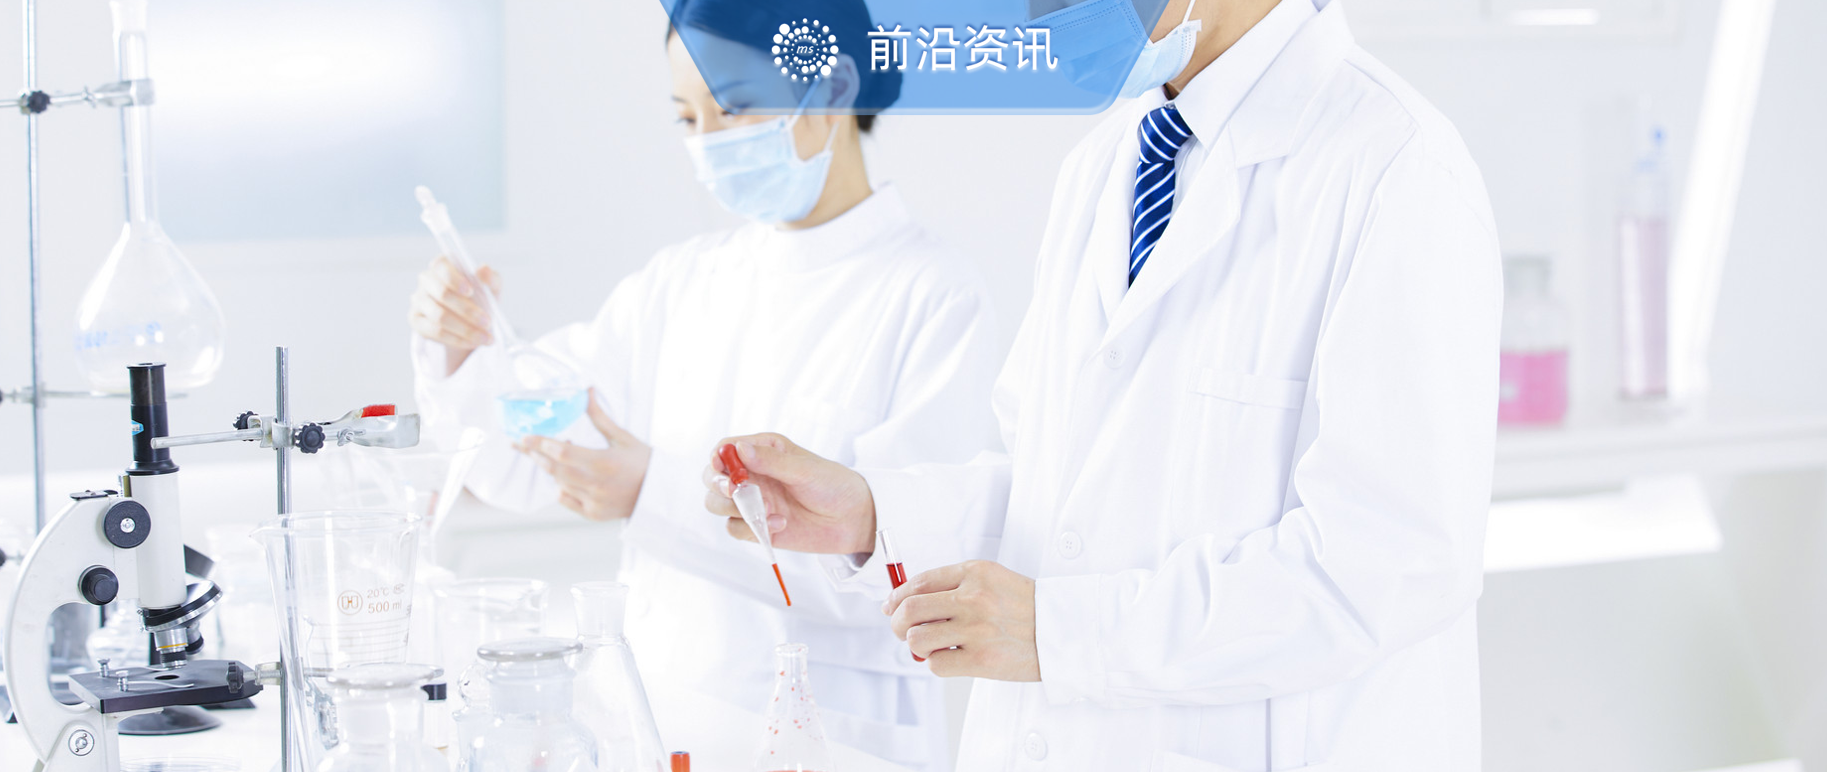 中国科学院在生物毒素成分抑制肿瘤生长研究中取得进展